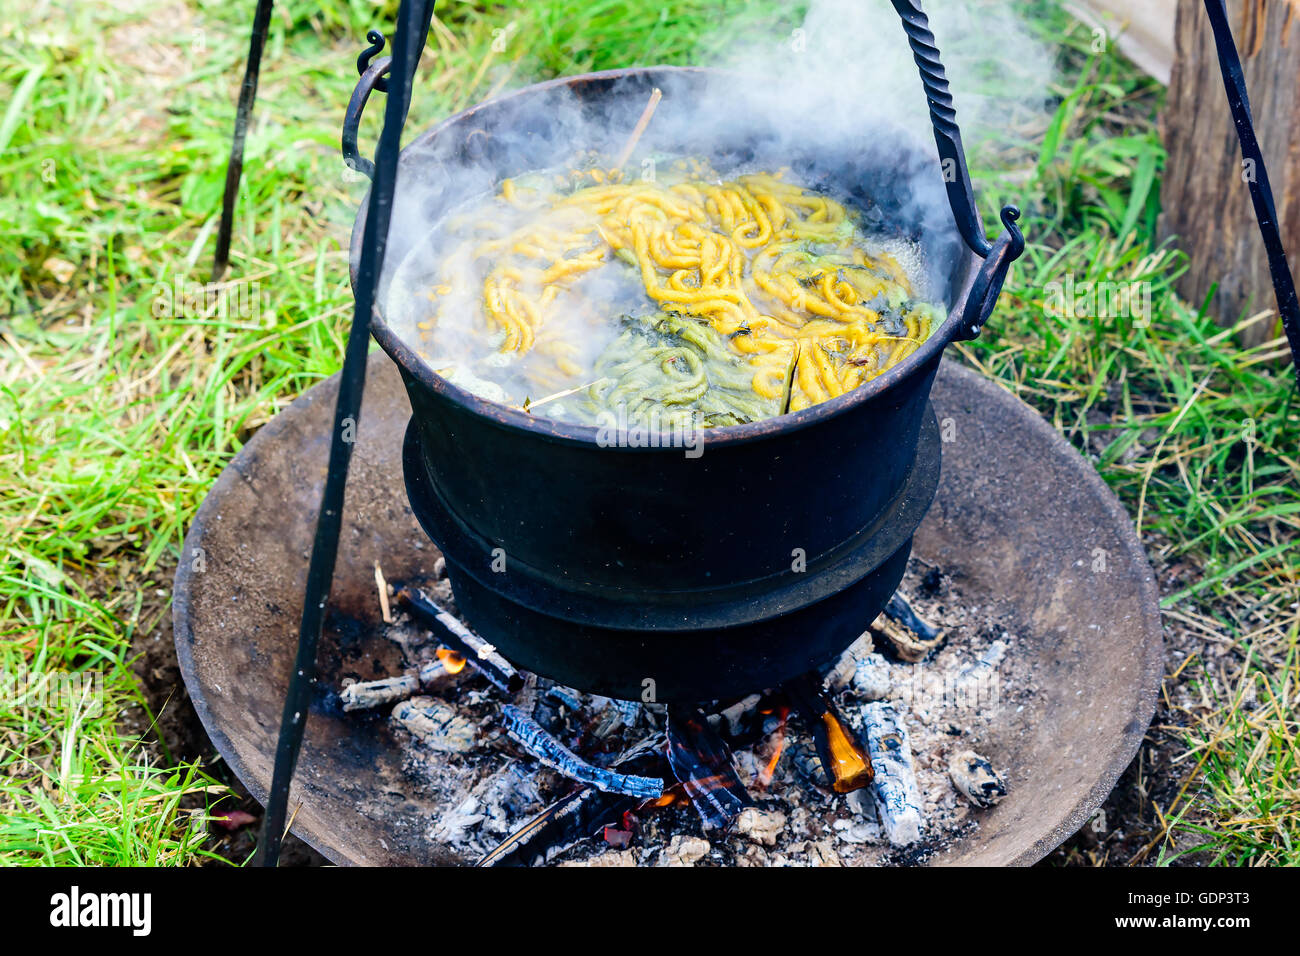 Im freien Hand an Garn in einem Eisentopf Kochen über offenem Feuer sterben. Garn und Kräuter in das kochende Wasser vorhanden. Stockfoto